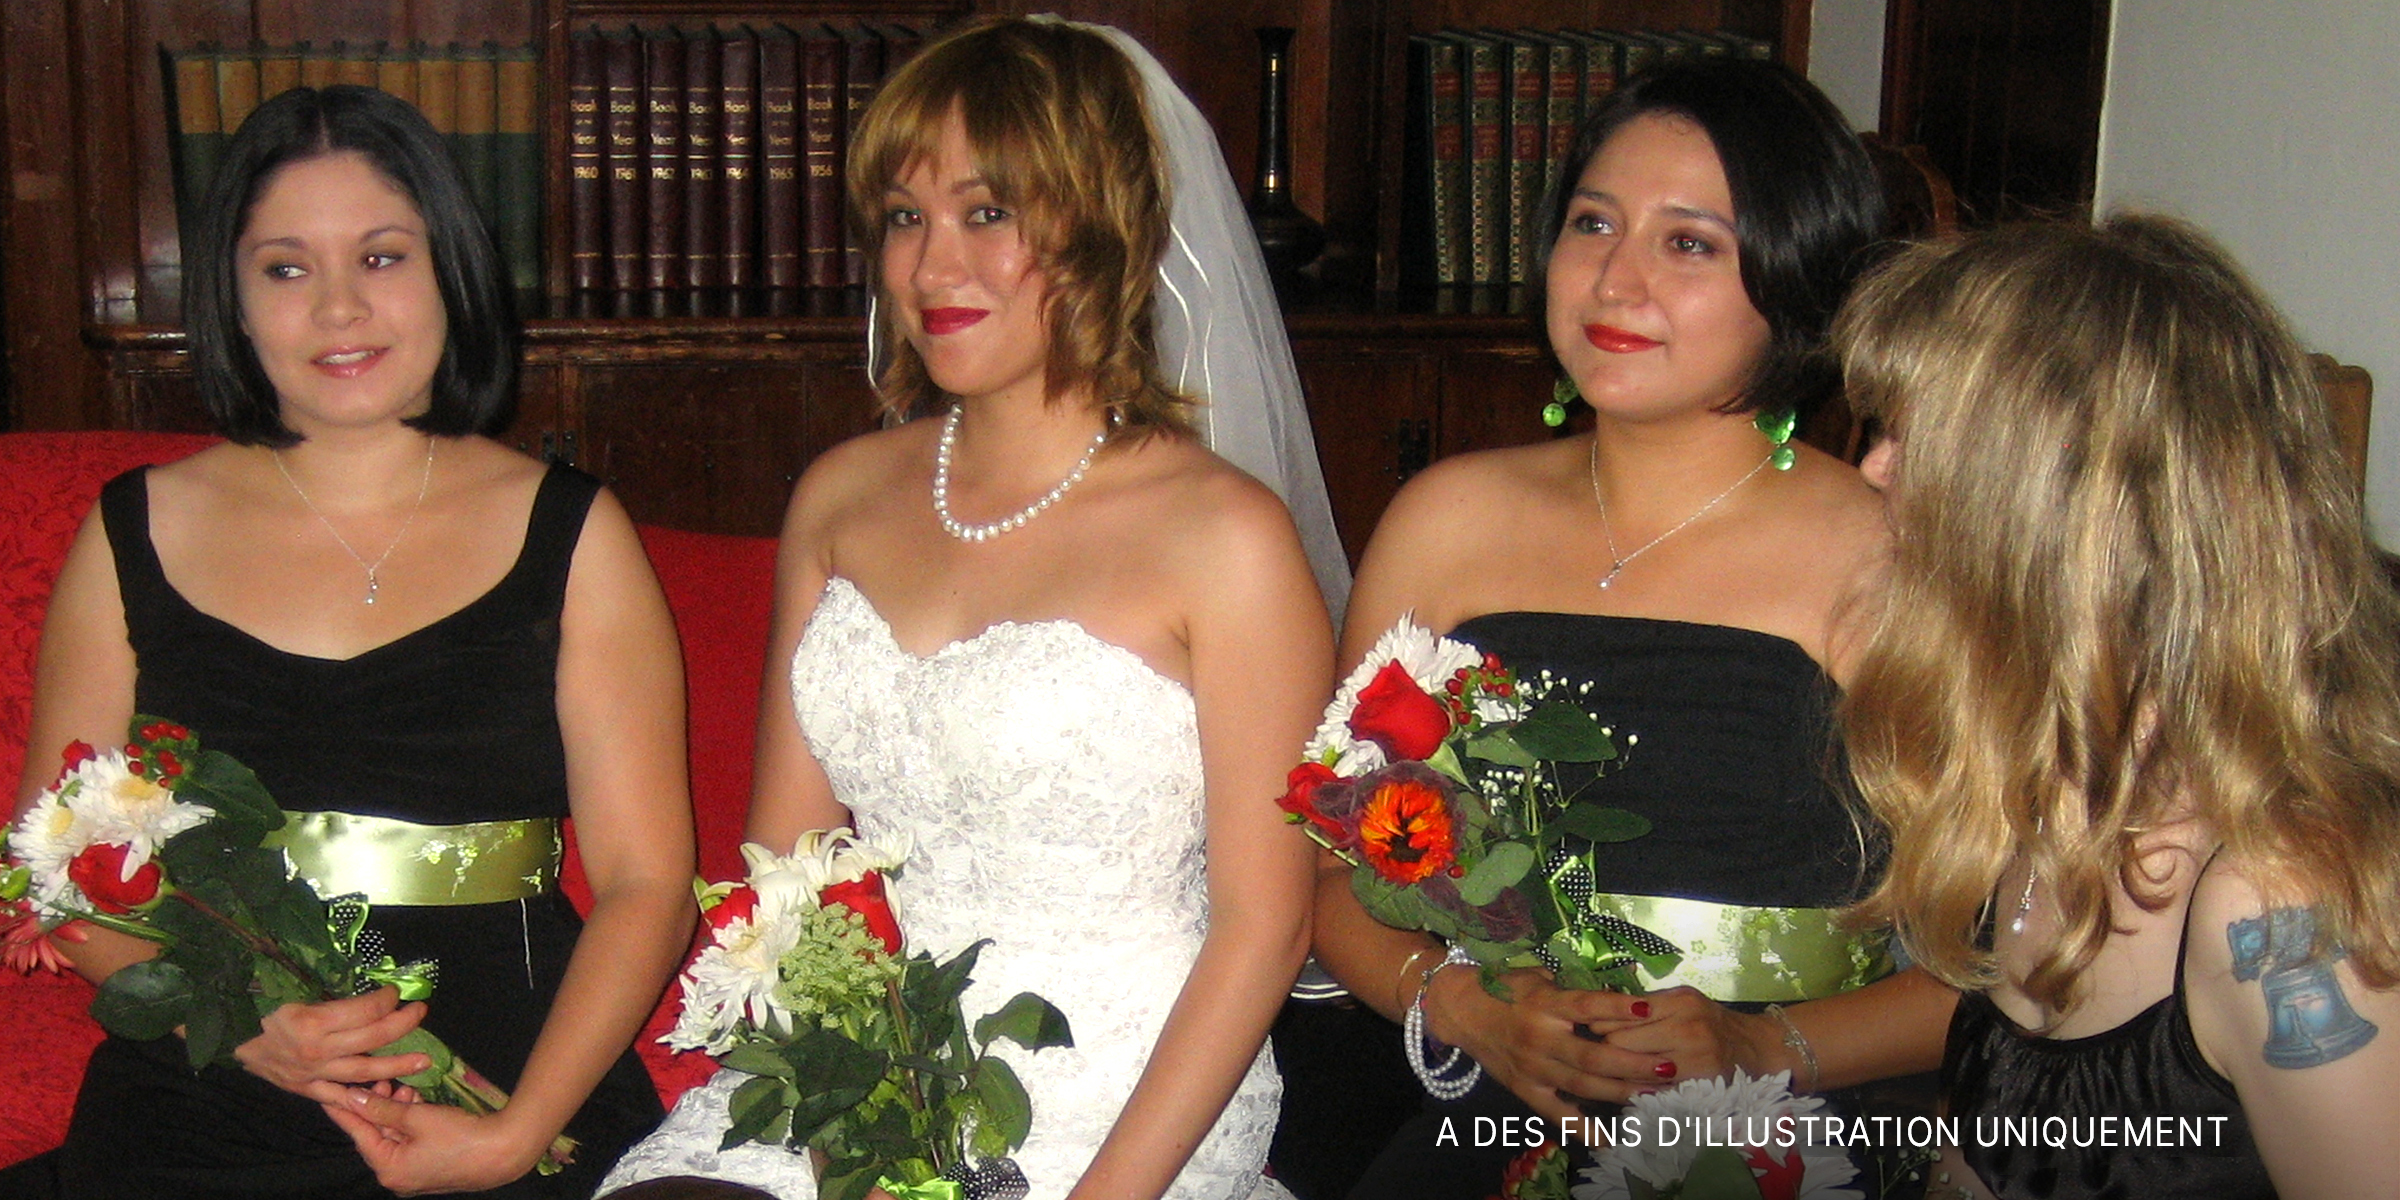 Une mariée a demandé à l'une de ses demoiselles d'honneur de ne pas se joindre au cortège nuptial après s'être coupé les cheveux. | Source : flickr.com/CC BY-SA 2.0/schnaars